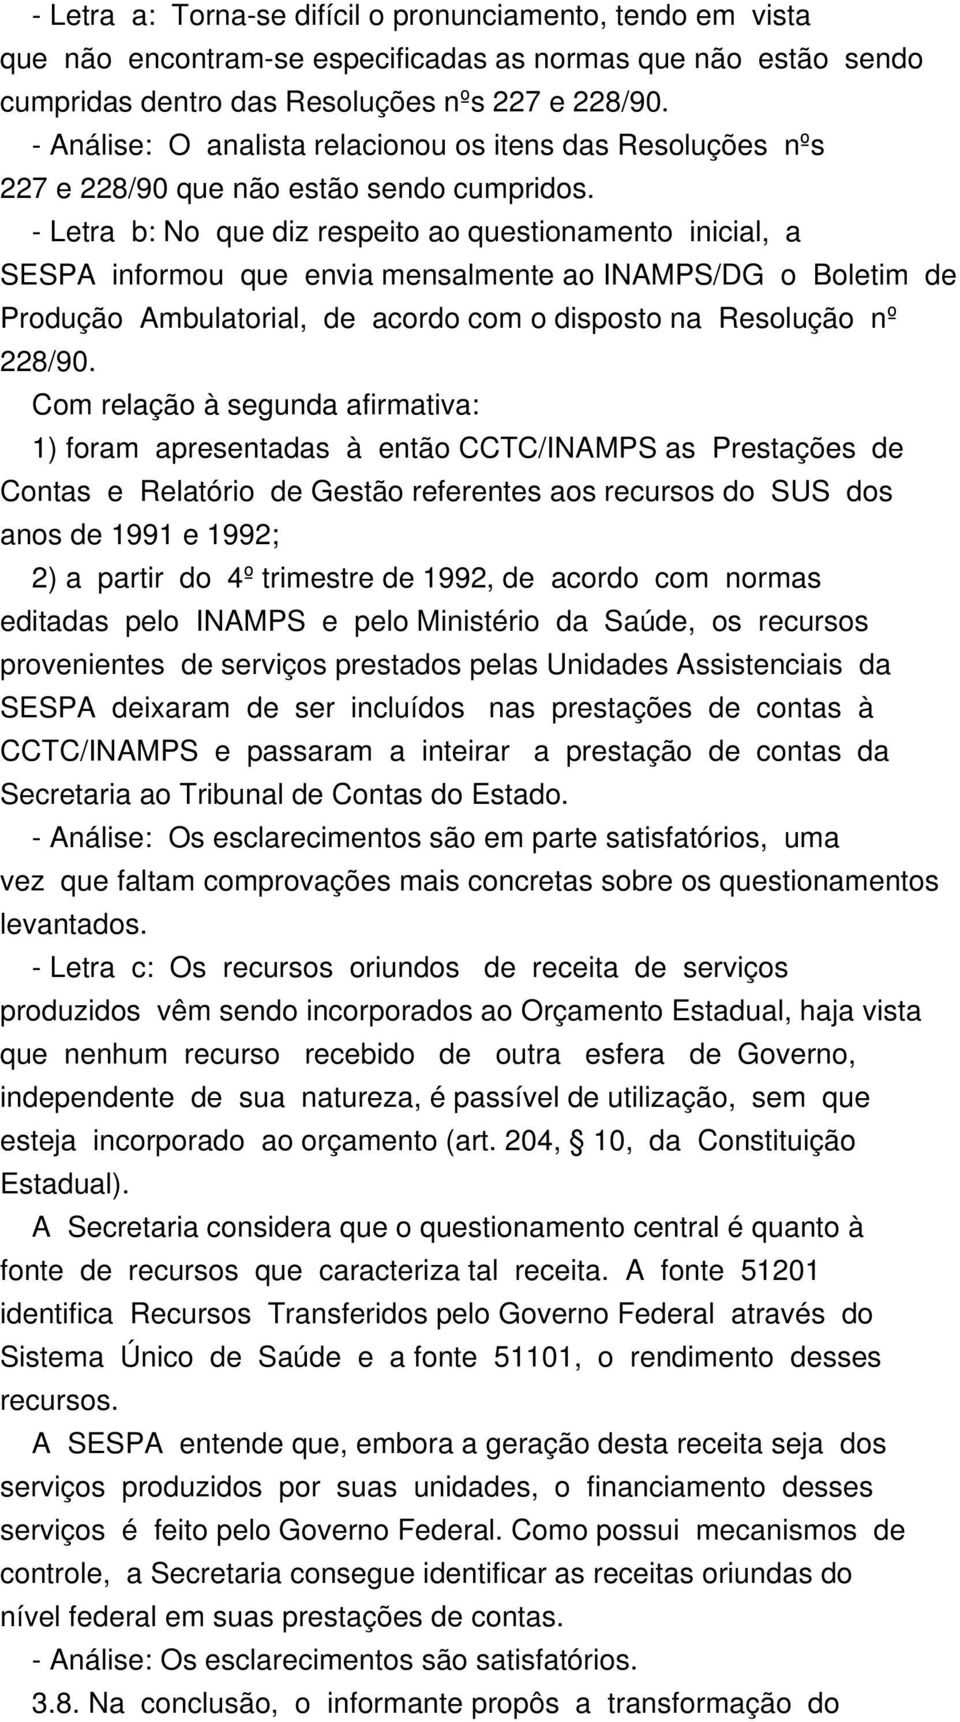 - Letra b: No que diz respeito ao questionamento inicial, a SESPA informou que envia mensalmente ao INAMPS/DG o Boletim de Produção Ambulatorial, de acordo com o disposto na Resolução nº 228/90.